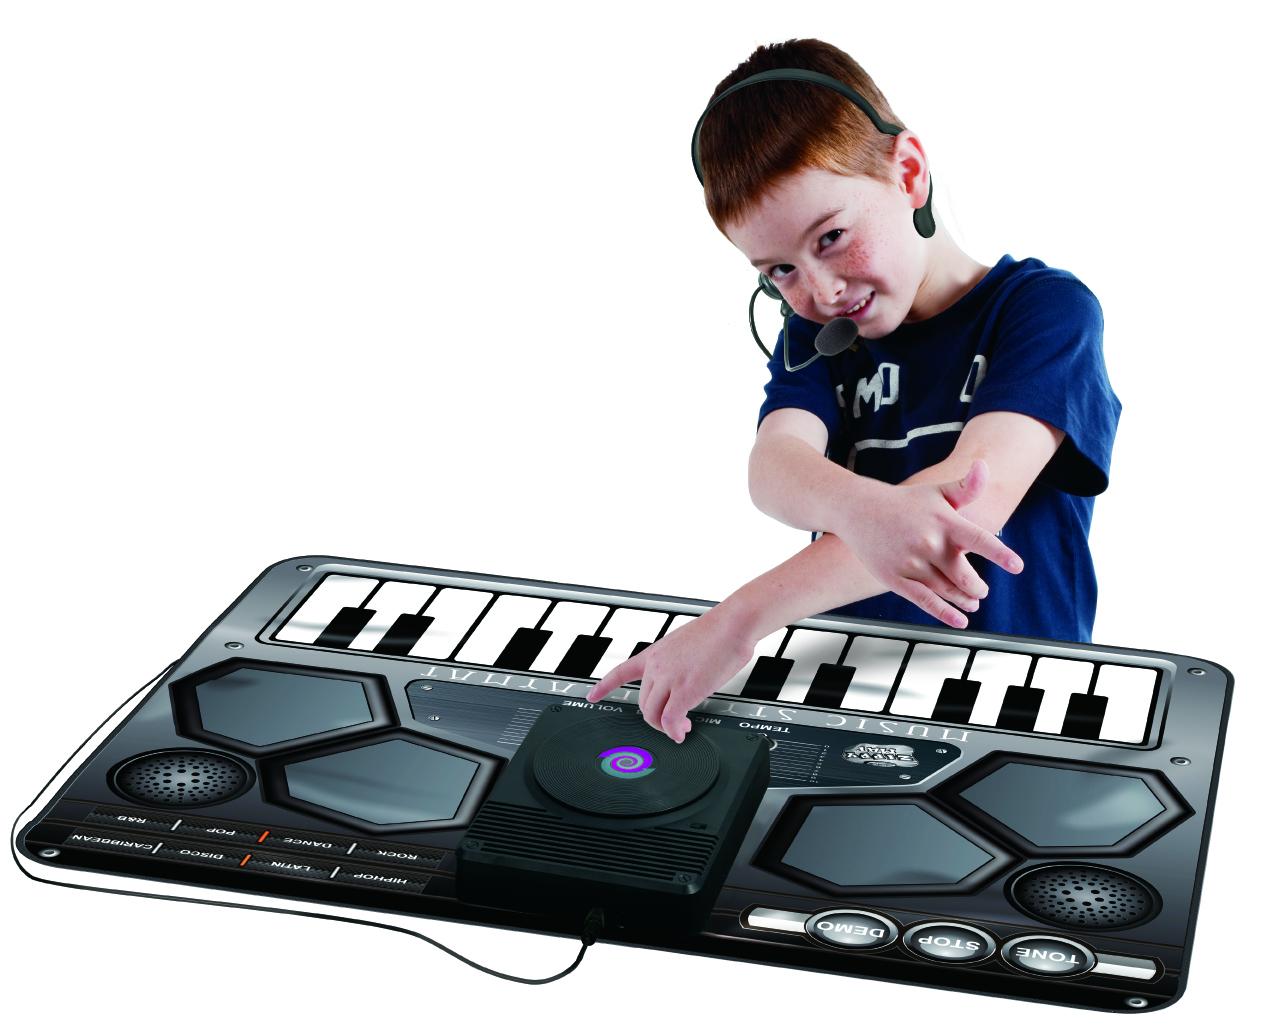 Изображение товара: Одеяло интерактивное музыкальное: настольный DJ-миксер (Ковер Музыкальный для детей-игровые коврики)